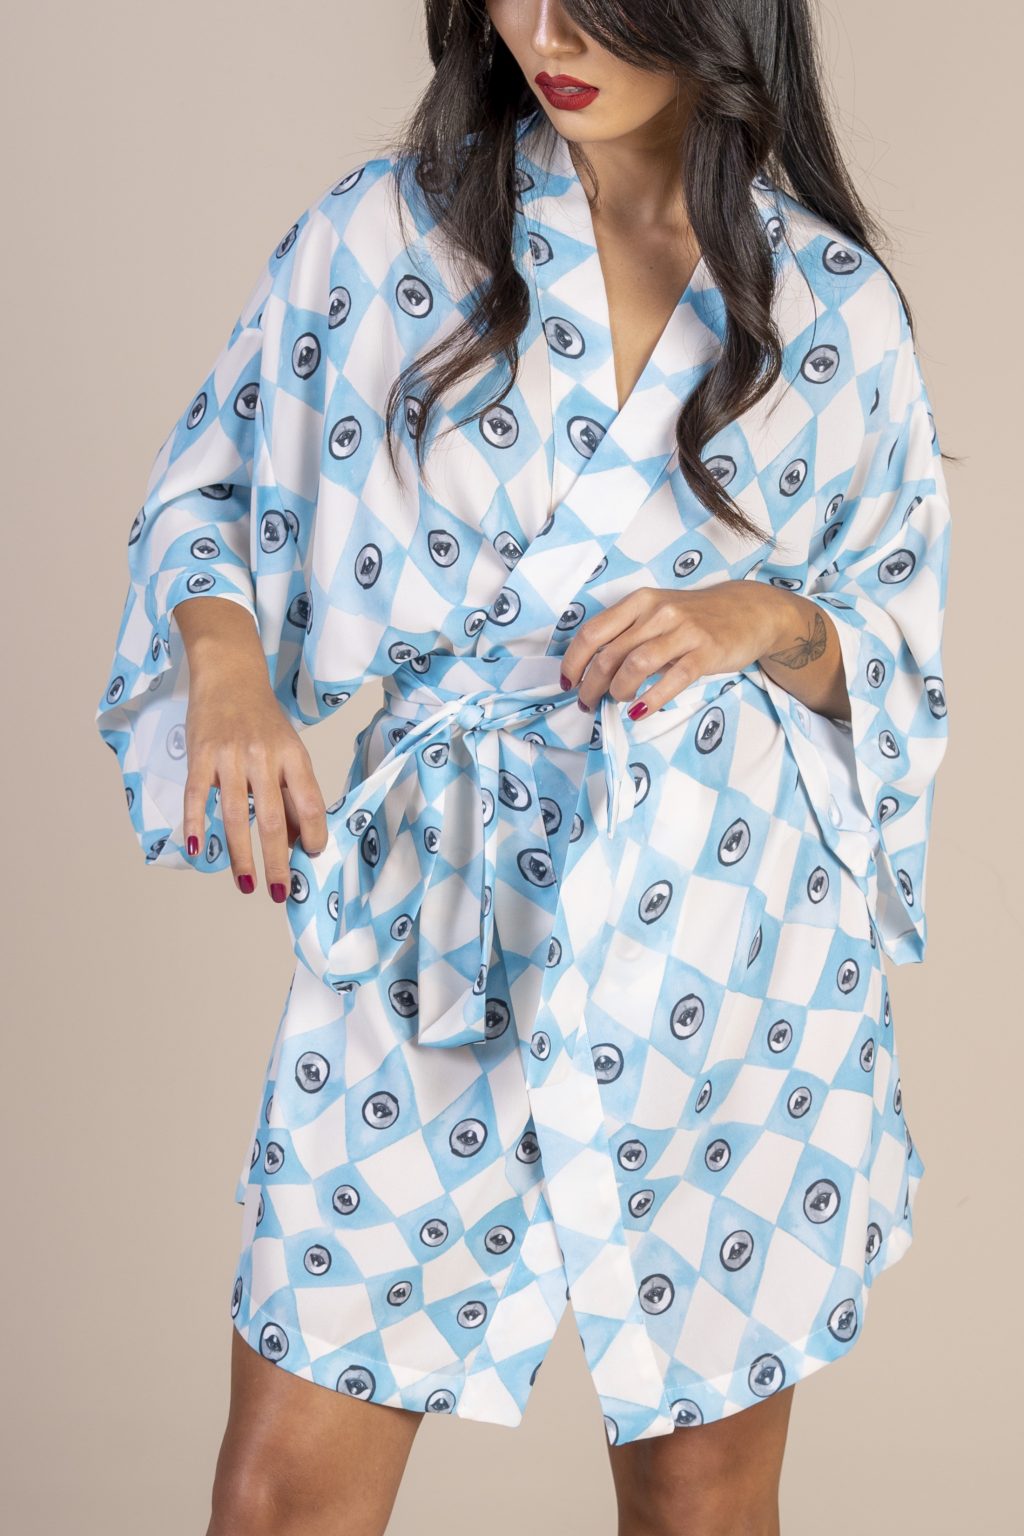 Mulher morena usando um kimono curto manga curta estampa exclusiva losango bege e azul com olhos desenhados a mão joker conforto praticidade elegância maria sanz kimono quimono